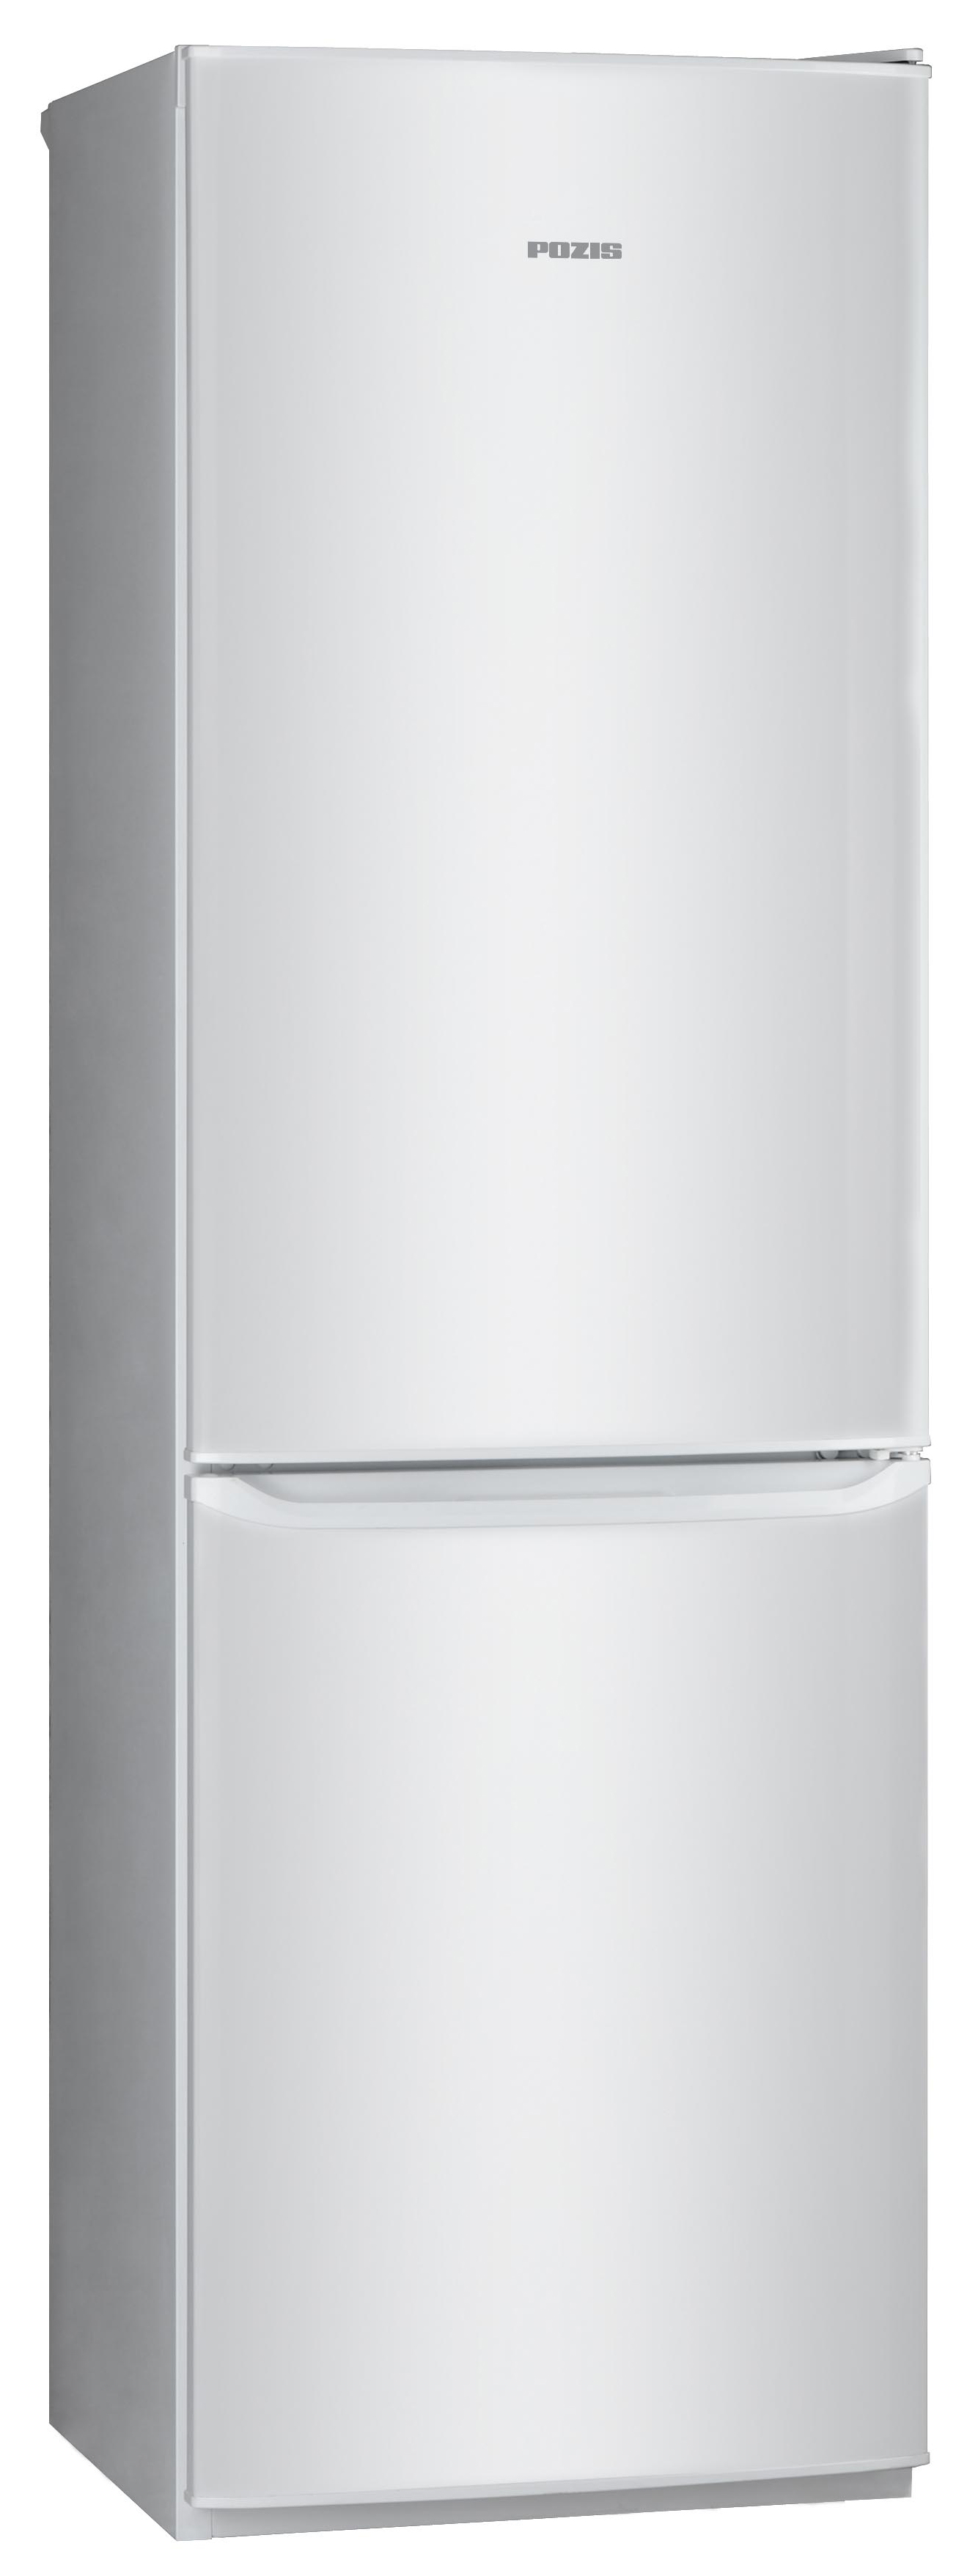 Холодильник POZIS RD-149 серебристый холодильник pozis rk 149 графитовый